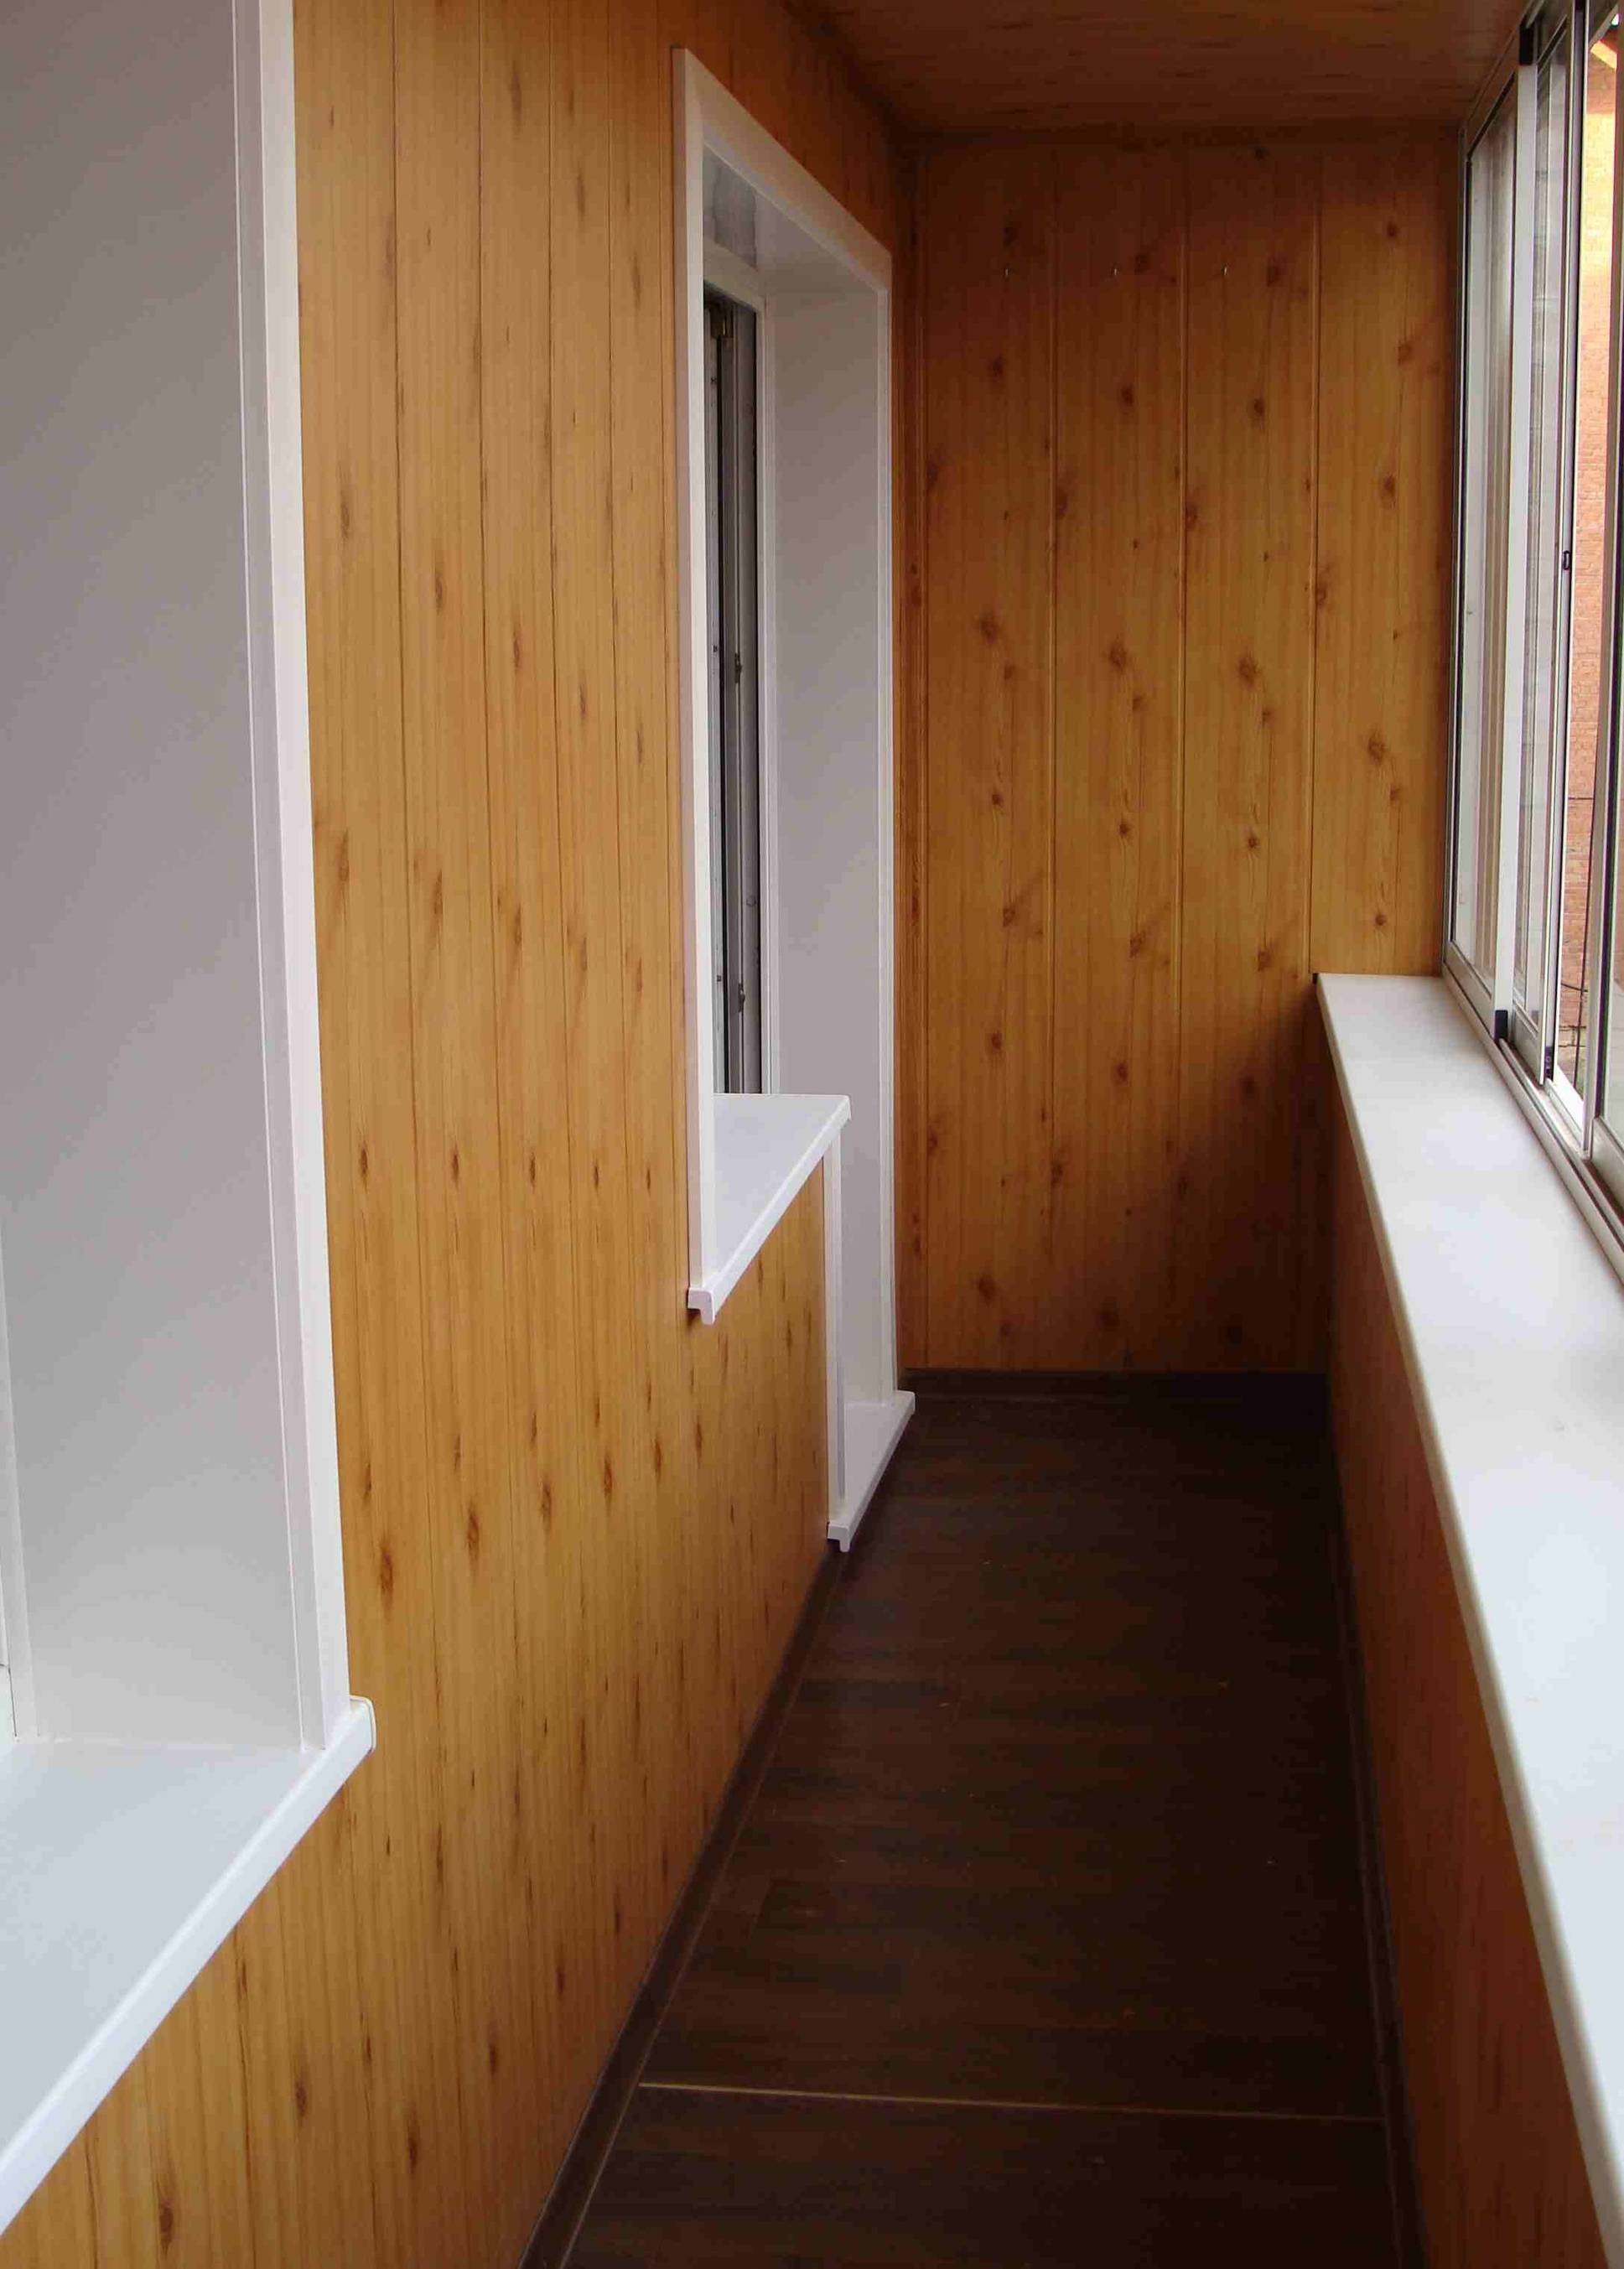 Панели для внутренней отделки стен балкона